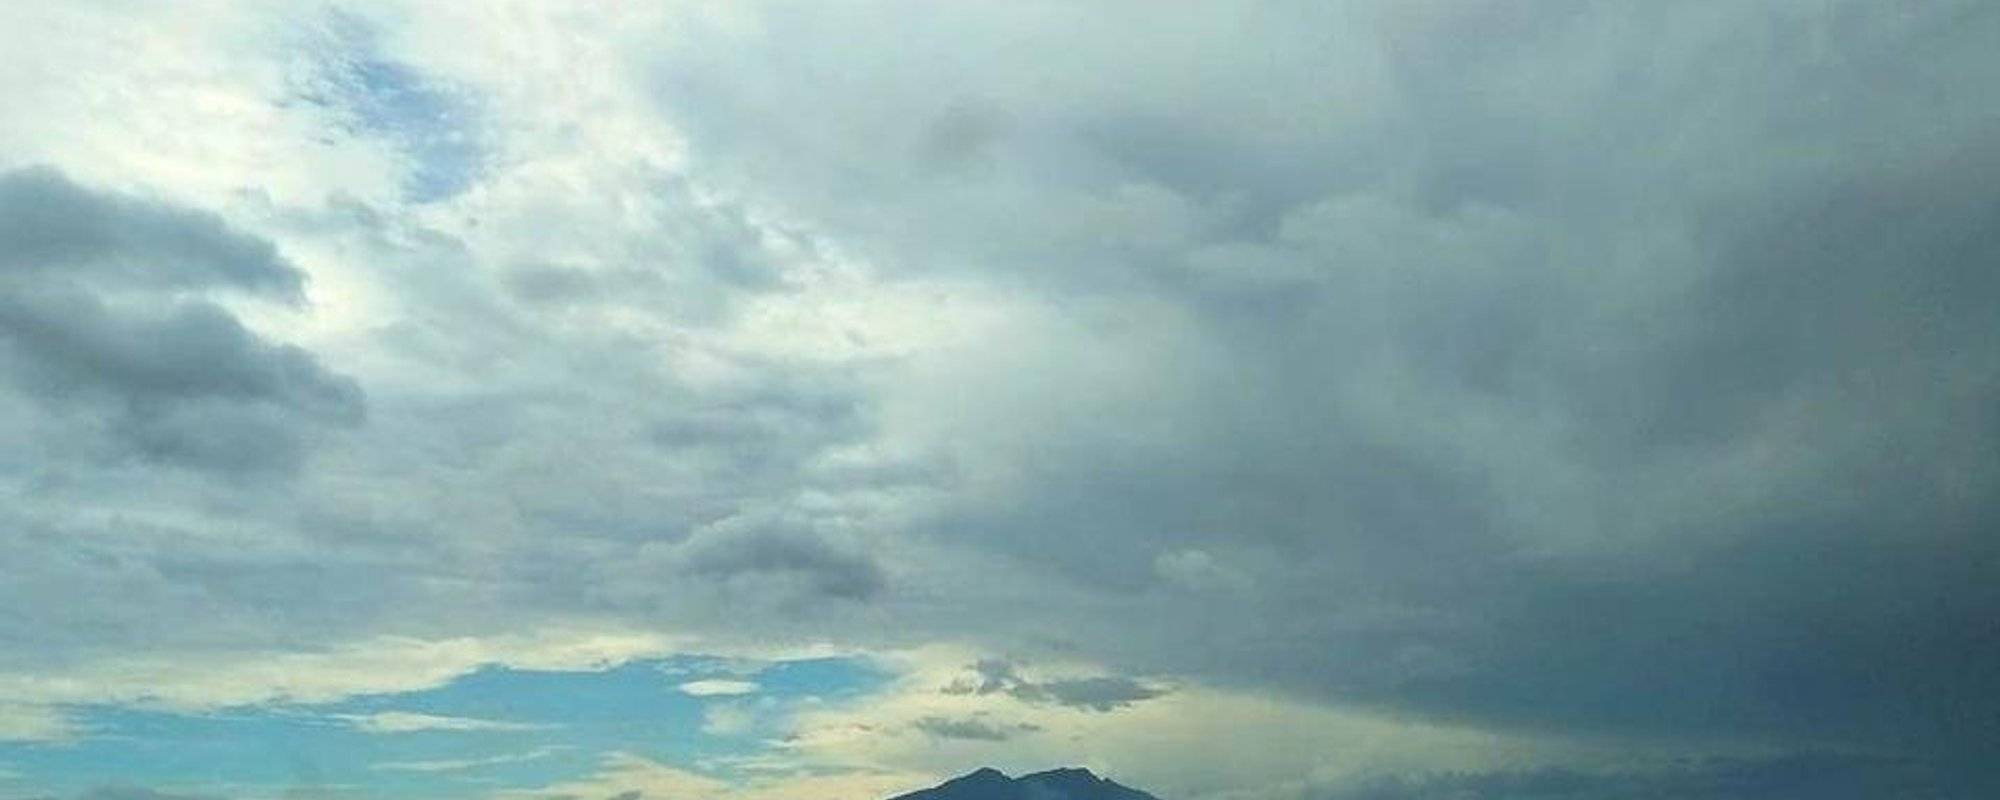 Mt. Arayat as seen along TPLEX